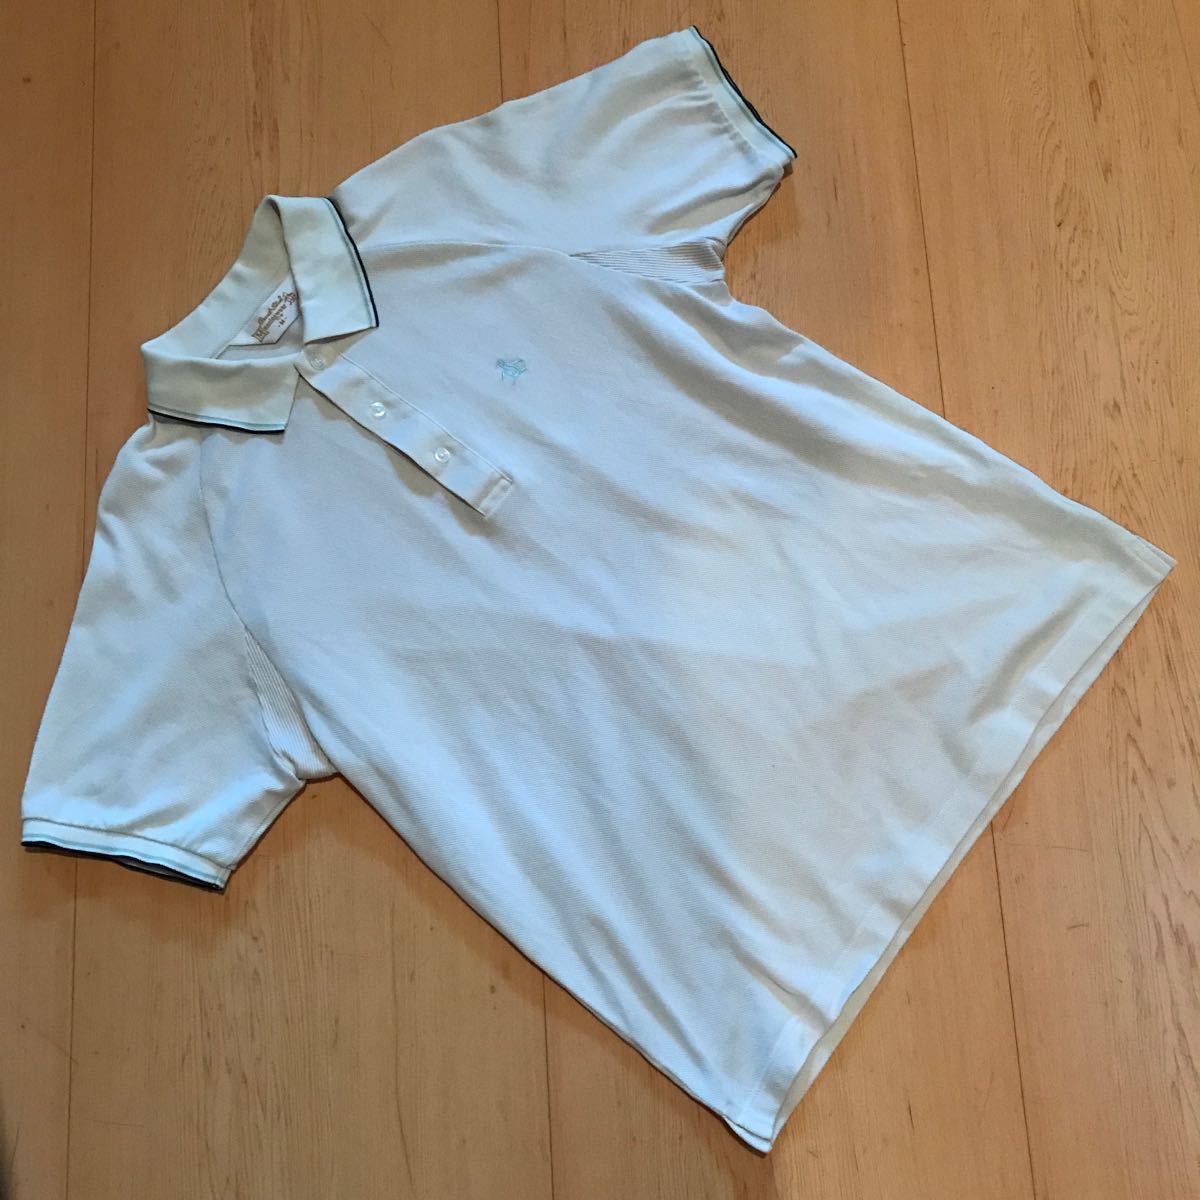 マンシングウエア(munsingwear) グランドスラム半袖ポロシャツ(MG1507) ベージュ メンズMサイズ 日本製 中古品